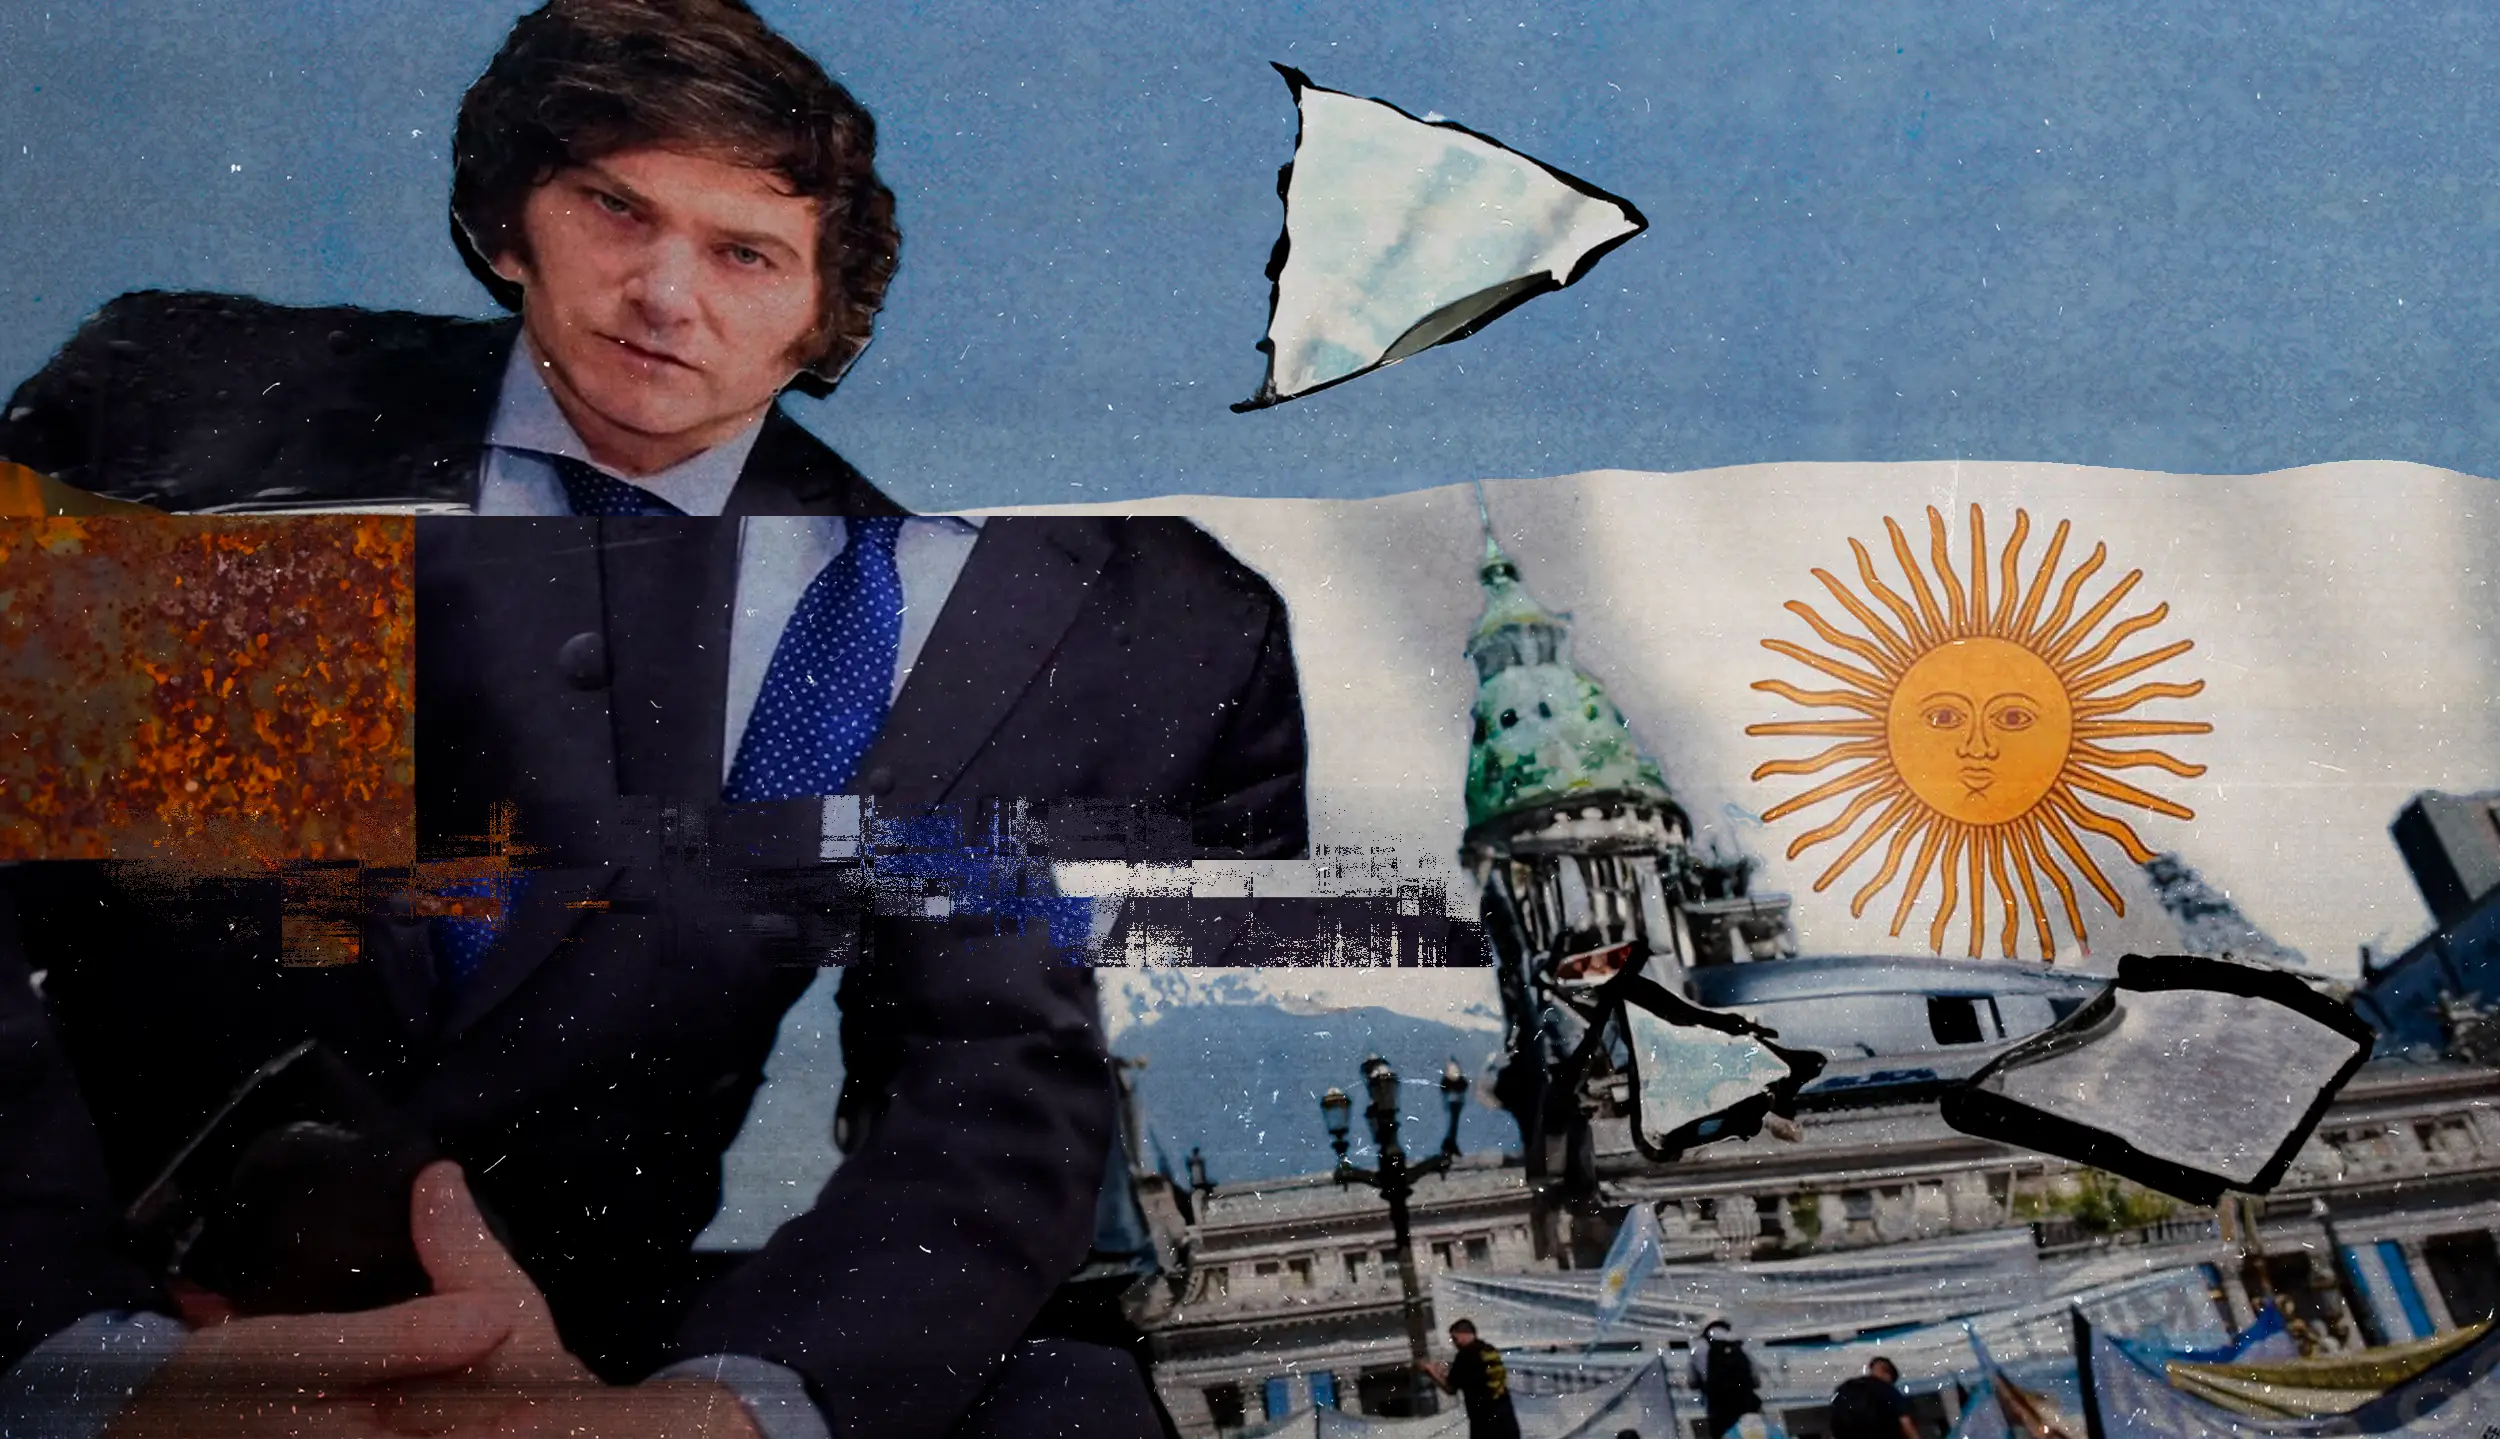 Крайне правые у власти (теперь и) в Аргентине